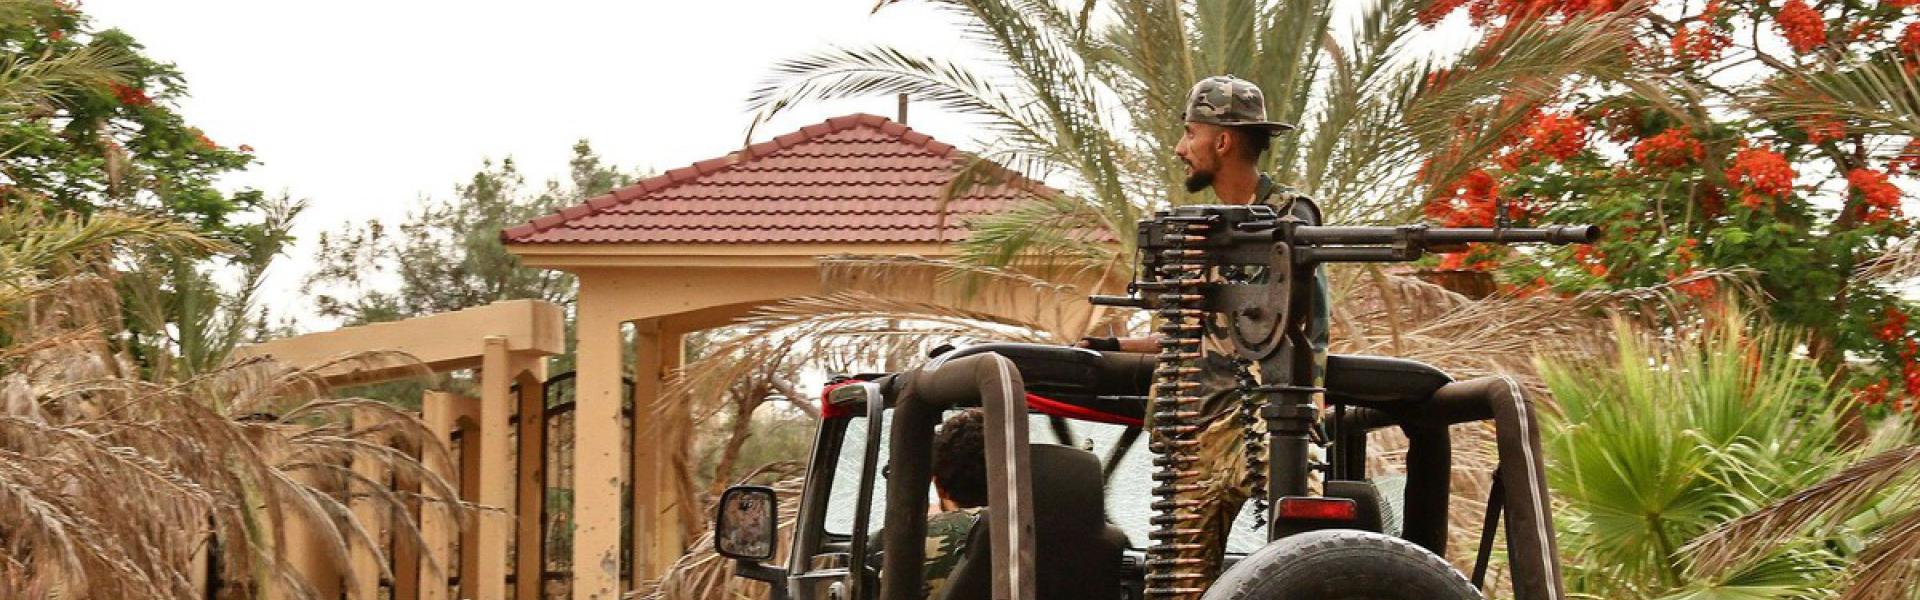 فوضى السلاح تعيق عودة الاستقرار إلى ليبيا 